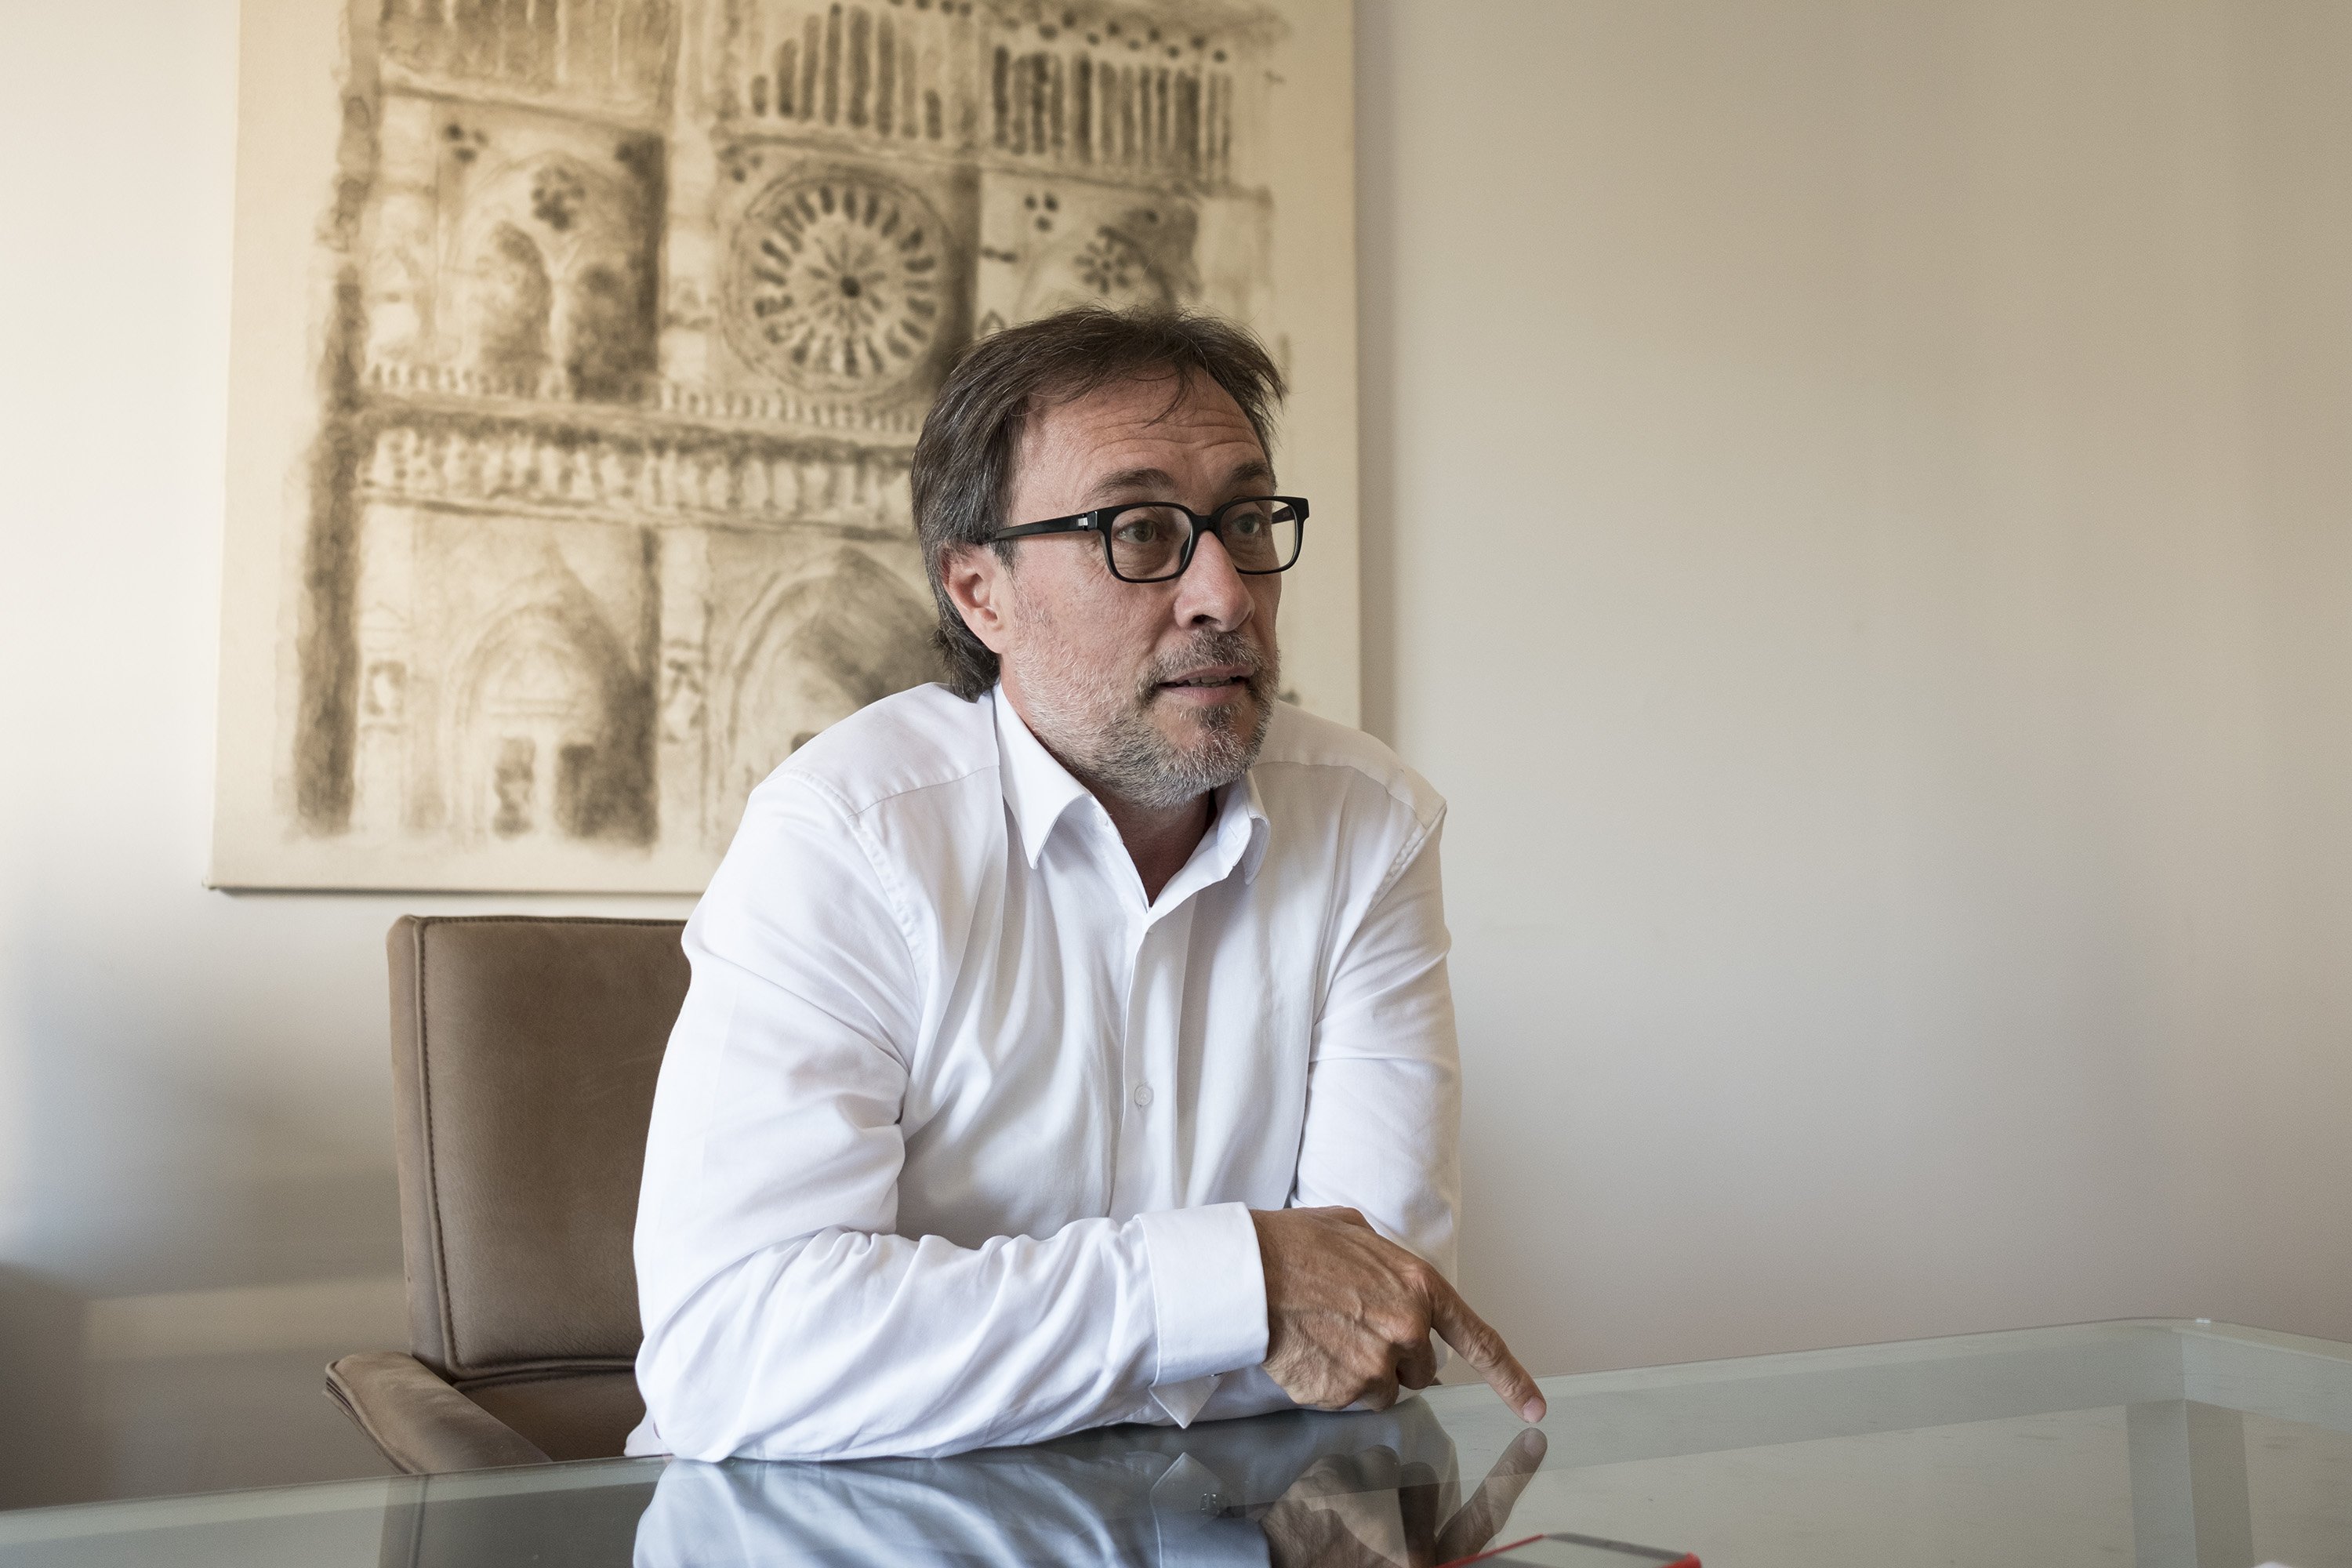 Benedito reclama una rectificación pública del portavoz del Barça